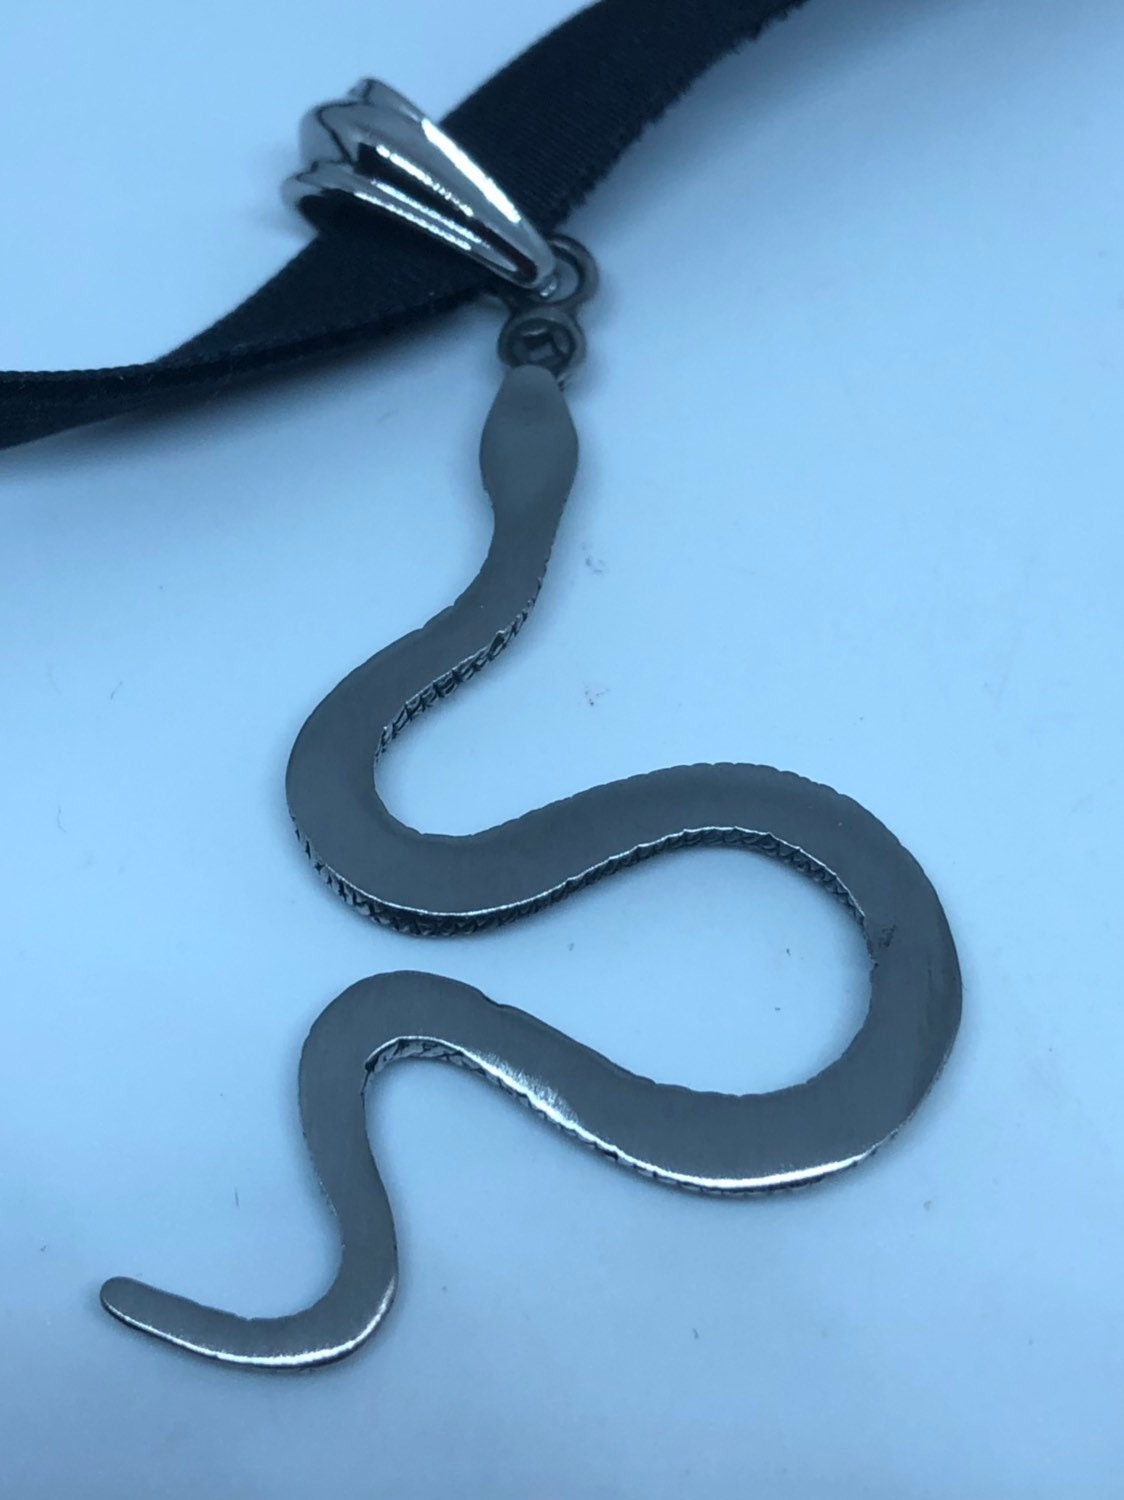 Vintage Handmade Stainless Steel Snake Lucky Yen Amulet Pendant